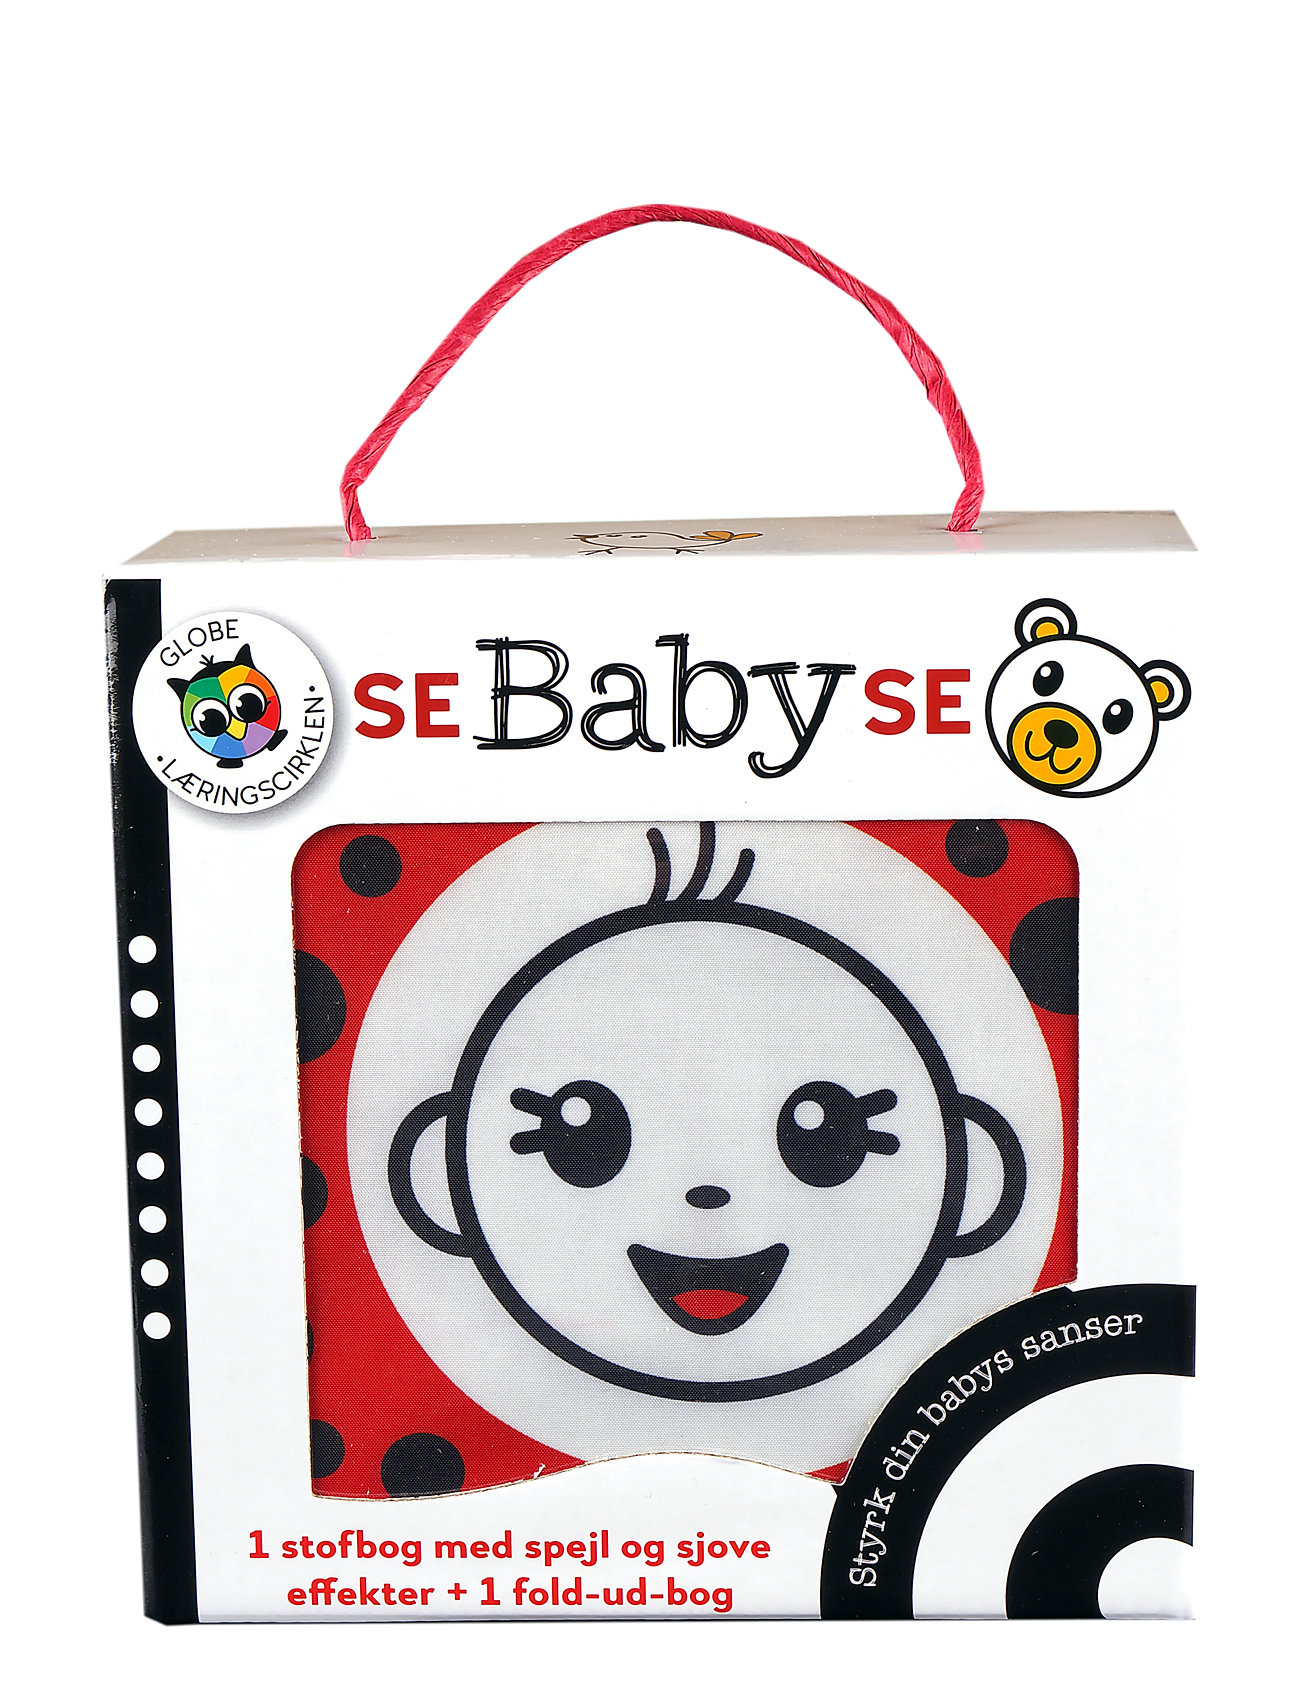 GLOBE "Se Baby Se-Æske Toys Kids Books Multi/patterned GLOBE"